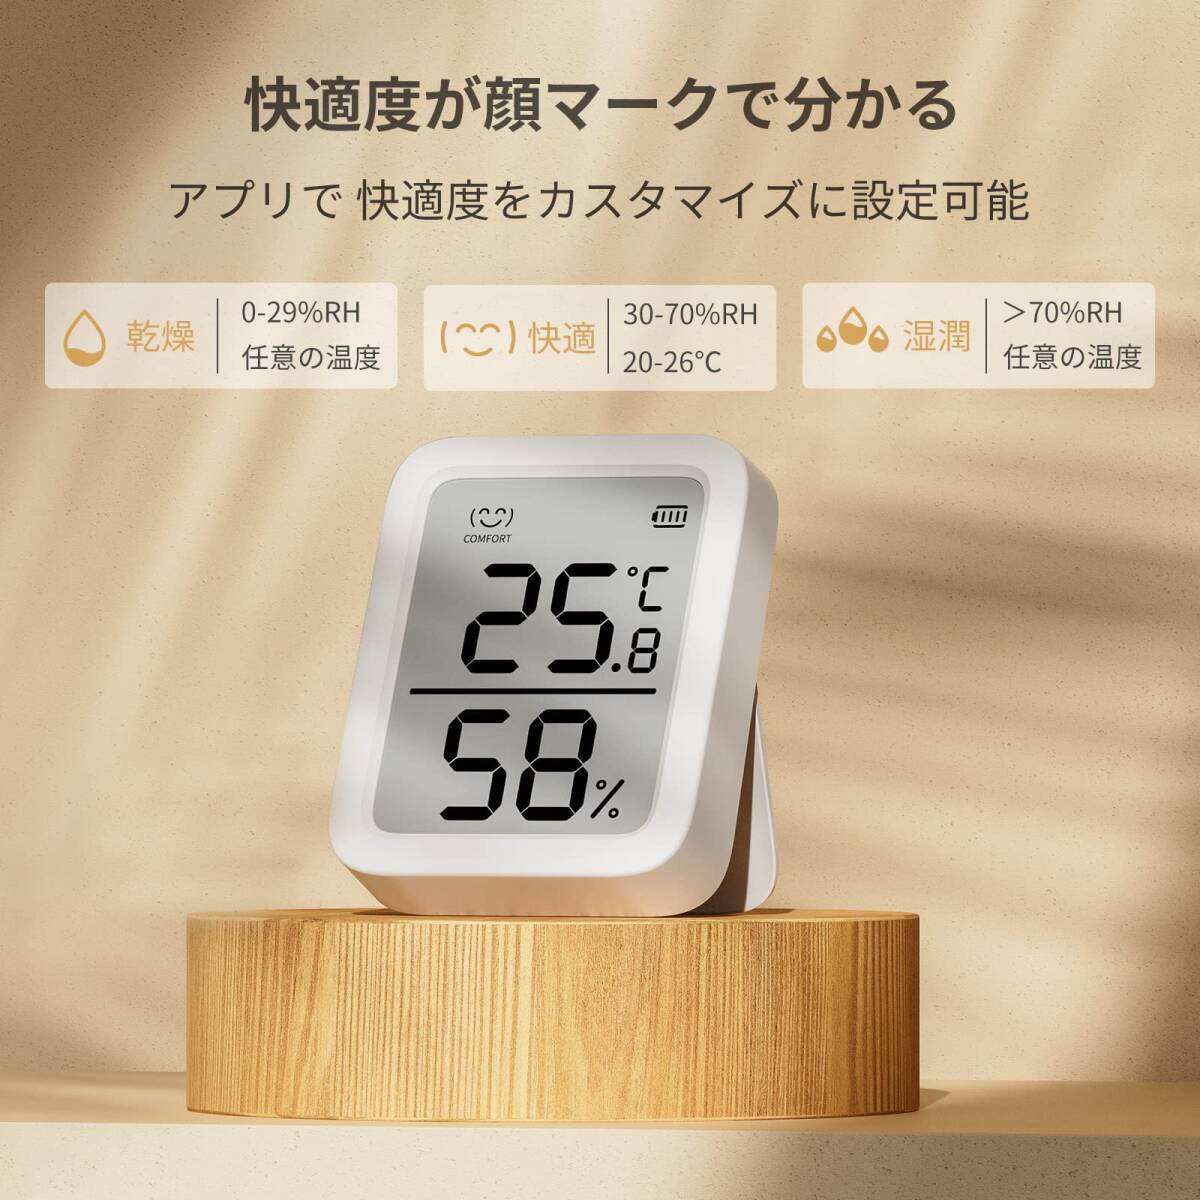 SwitchBot 温湿度計プラス Alexa 温度計 湿度計 - スイッチボット スマホで温度湿度管理 デジタル 高精度 コンパクト 大画面の画像7